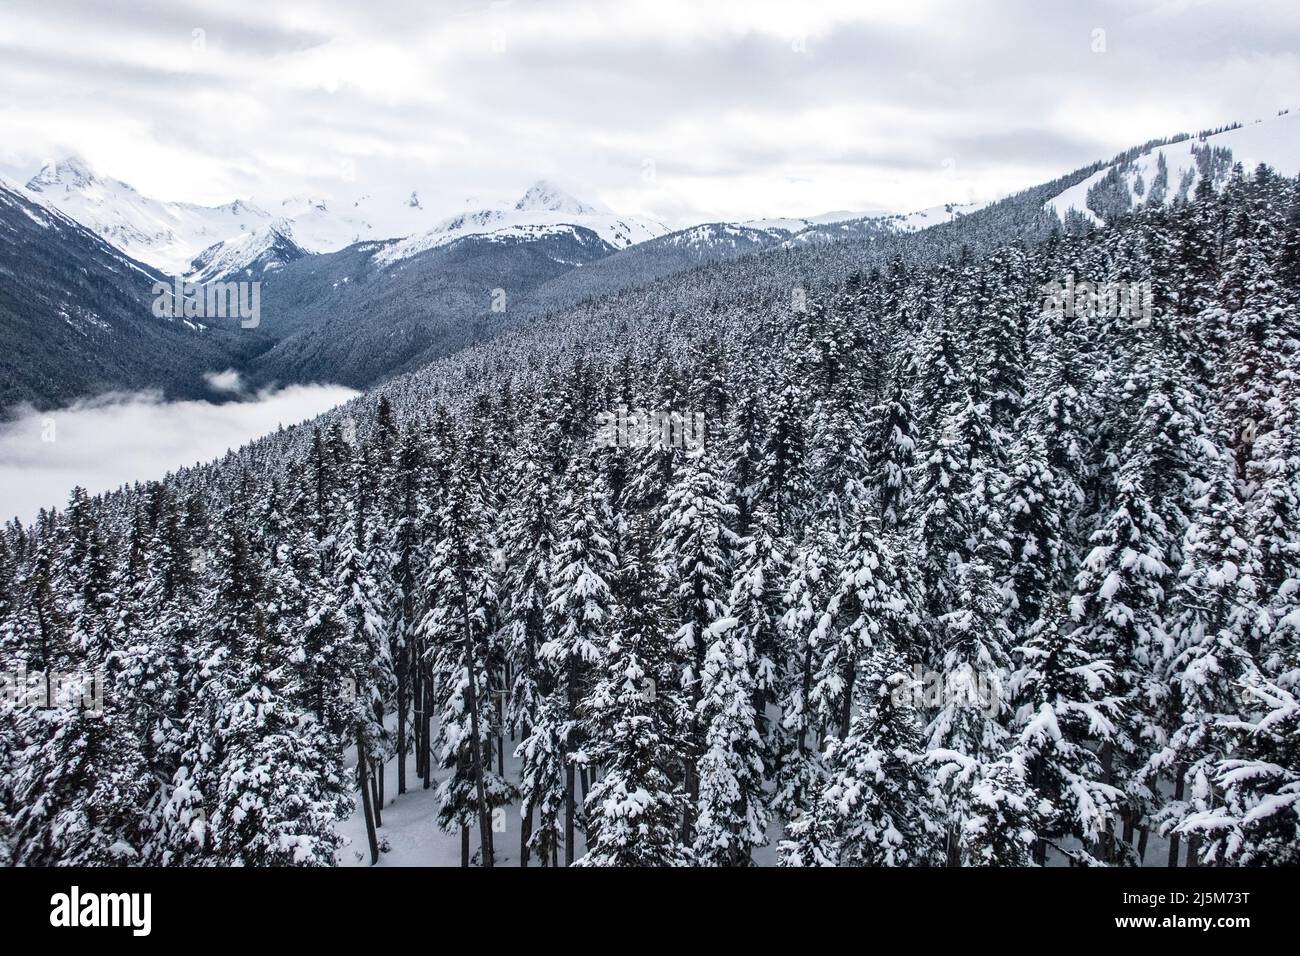 Blick auf die Fitzsimmons-Bergkette im Winter mit einem schneebedeckten immergrünen Baumwald, der von der Peak-Peak-Gondel in Whistler und BL aus genommen wird Stockfoto